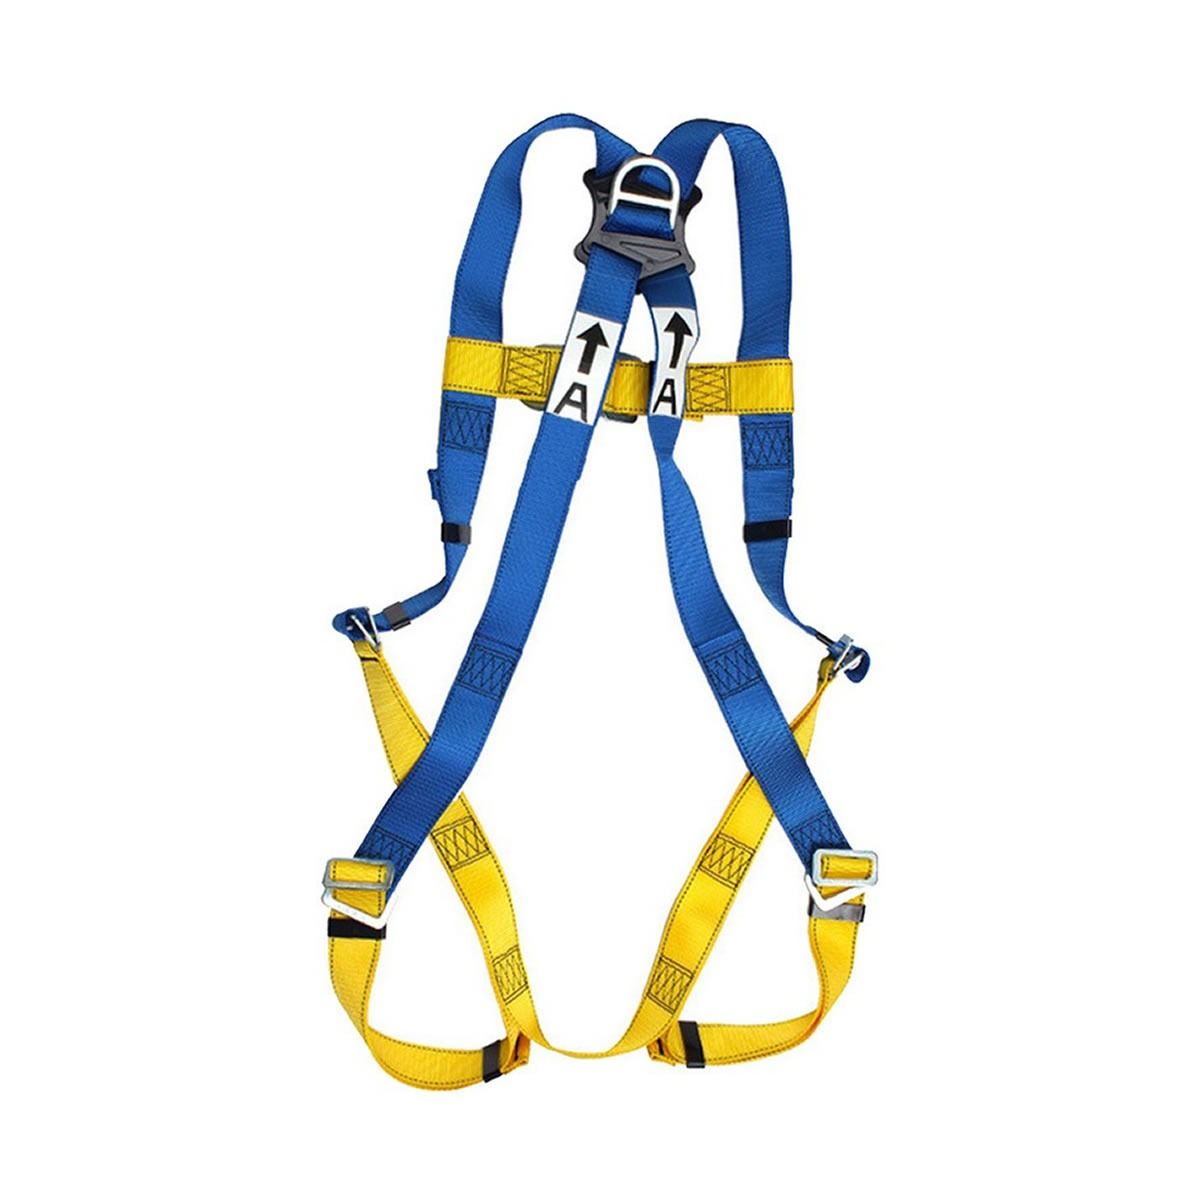 Bộ dây đai an toàn Body Harness 3M - 1390024